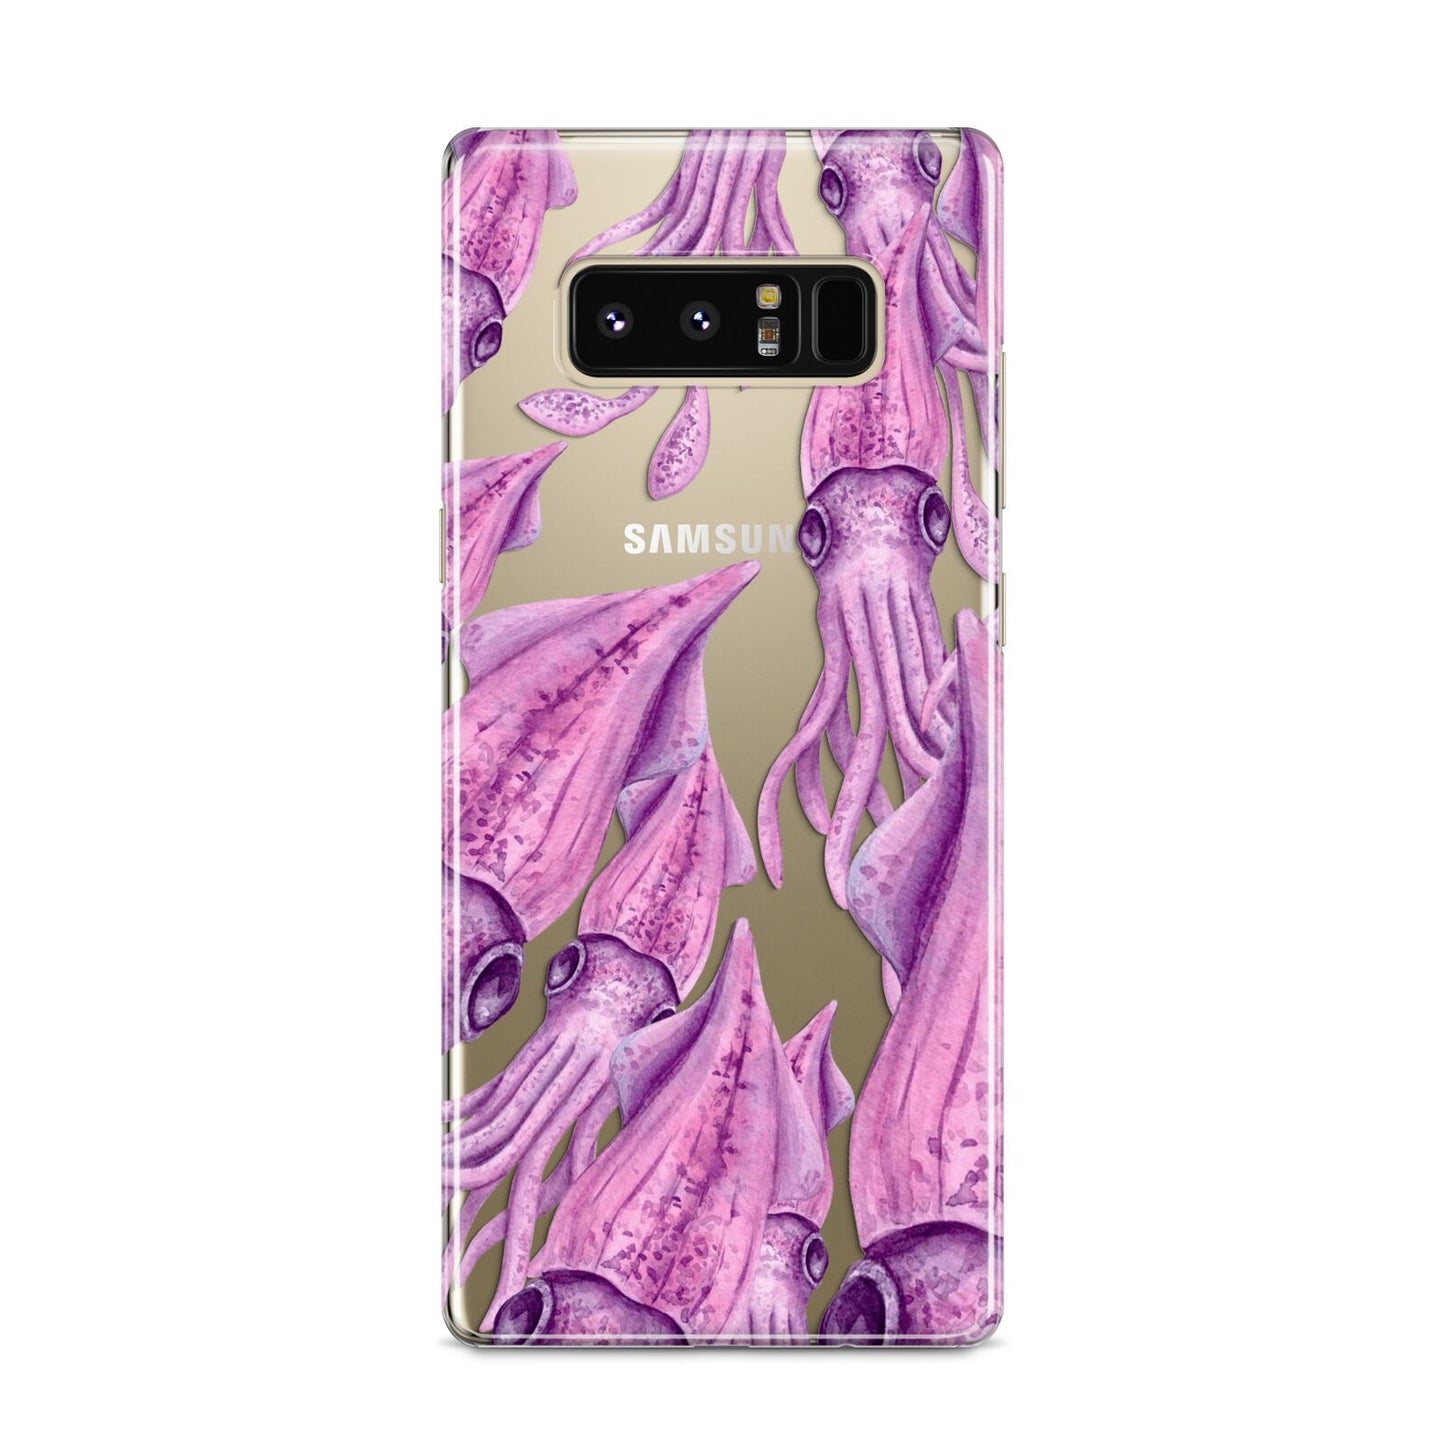 Squid Samsung Galaxy S8 Case